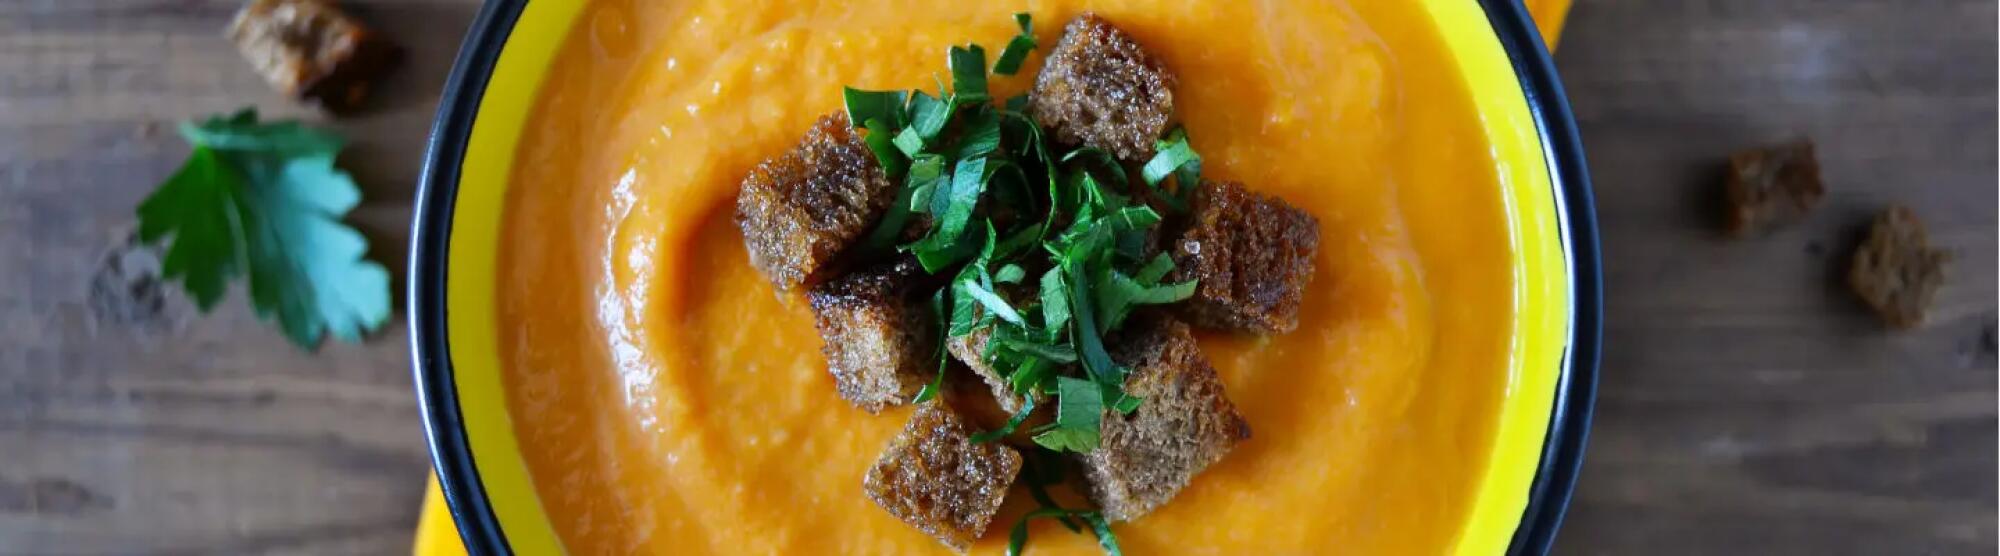 Recette : Purée de carotte au cumin et fromage frais